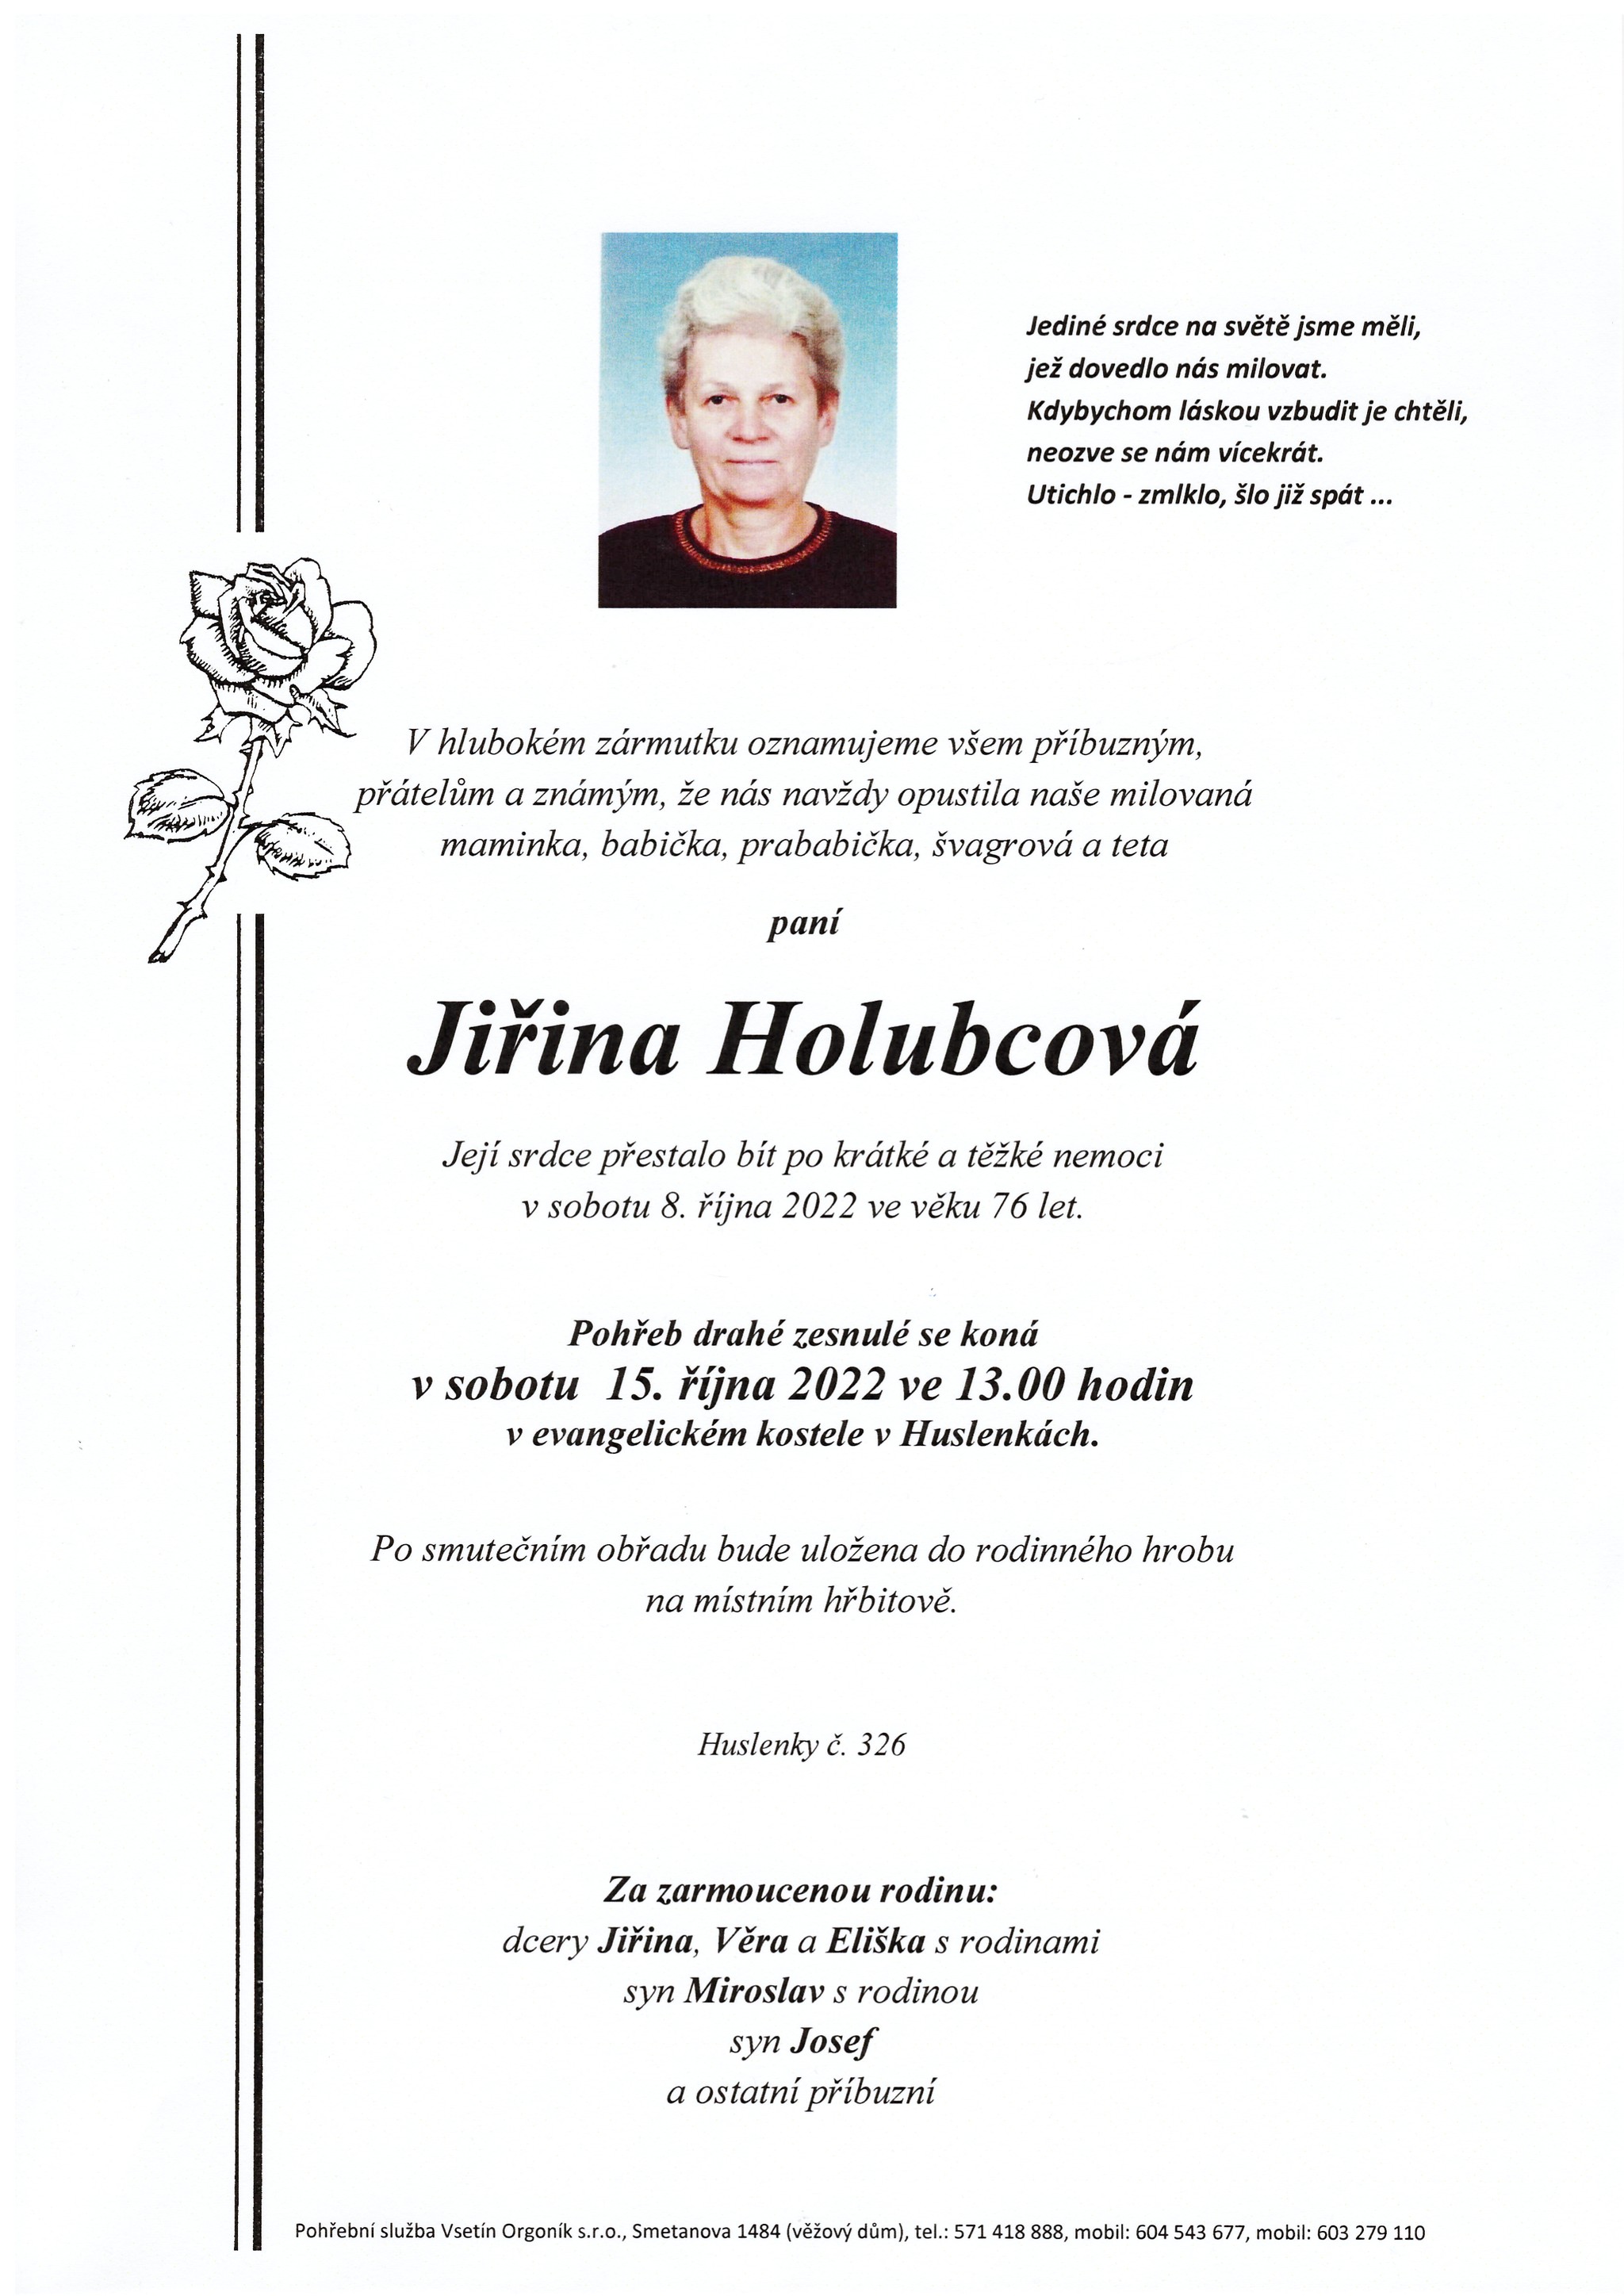 Jiřina Holubcová